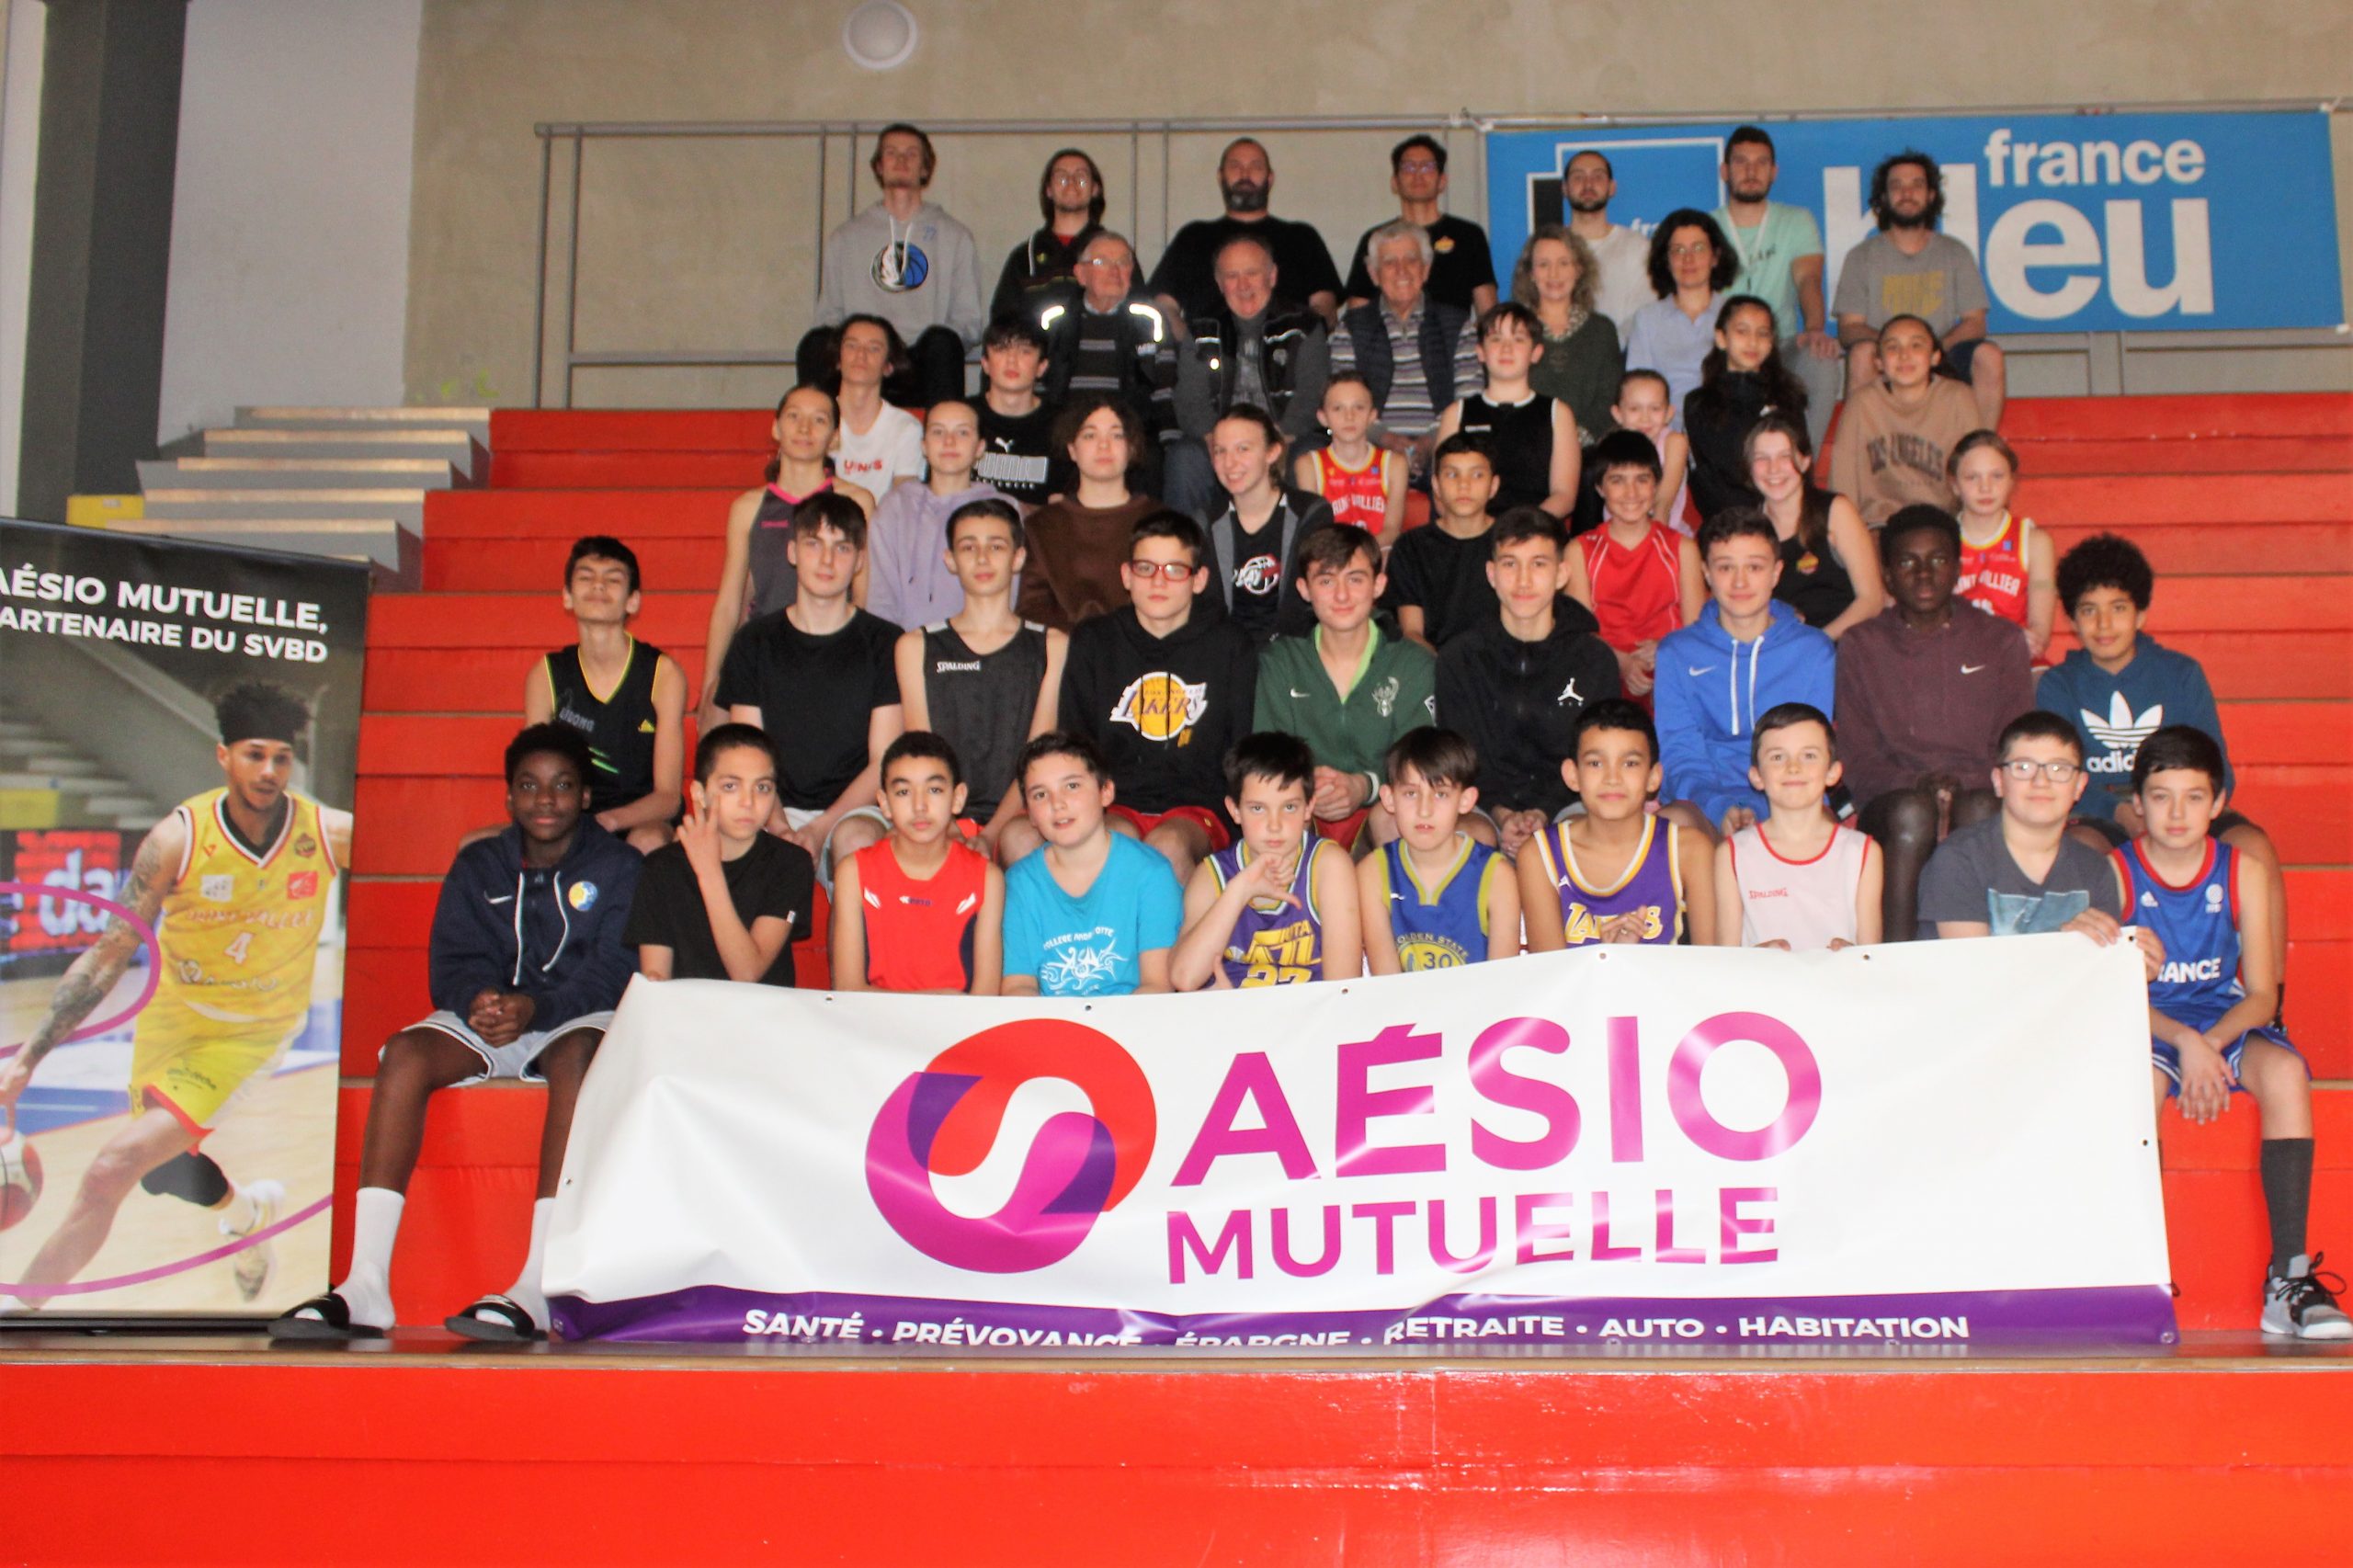 « Alimentation et basket » avec AESIO Mutuelle